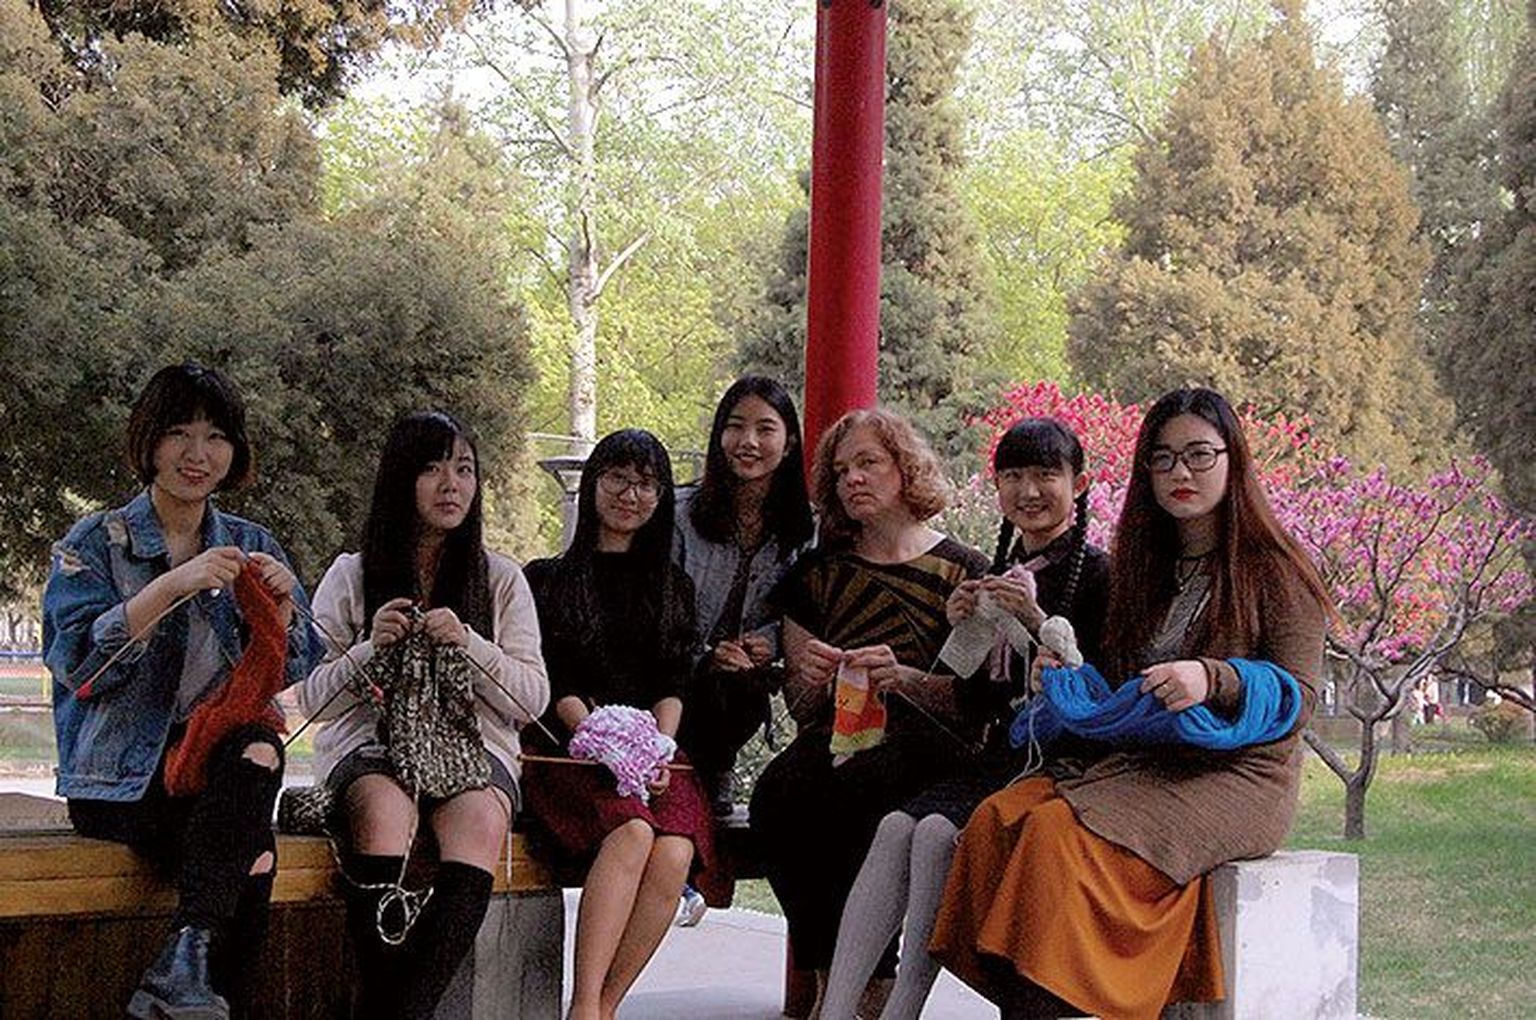 Eesti keelt õppivate tudengite käsitööring Pekingis. Keeleõppe kõrval on sealsete noorte näppude all valminud ka Eesti rahvusvärvides heegelmotiivid.